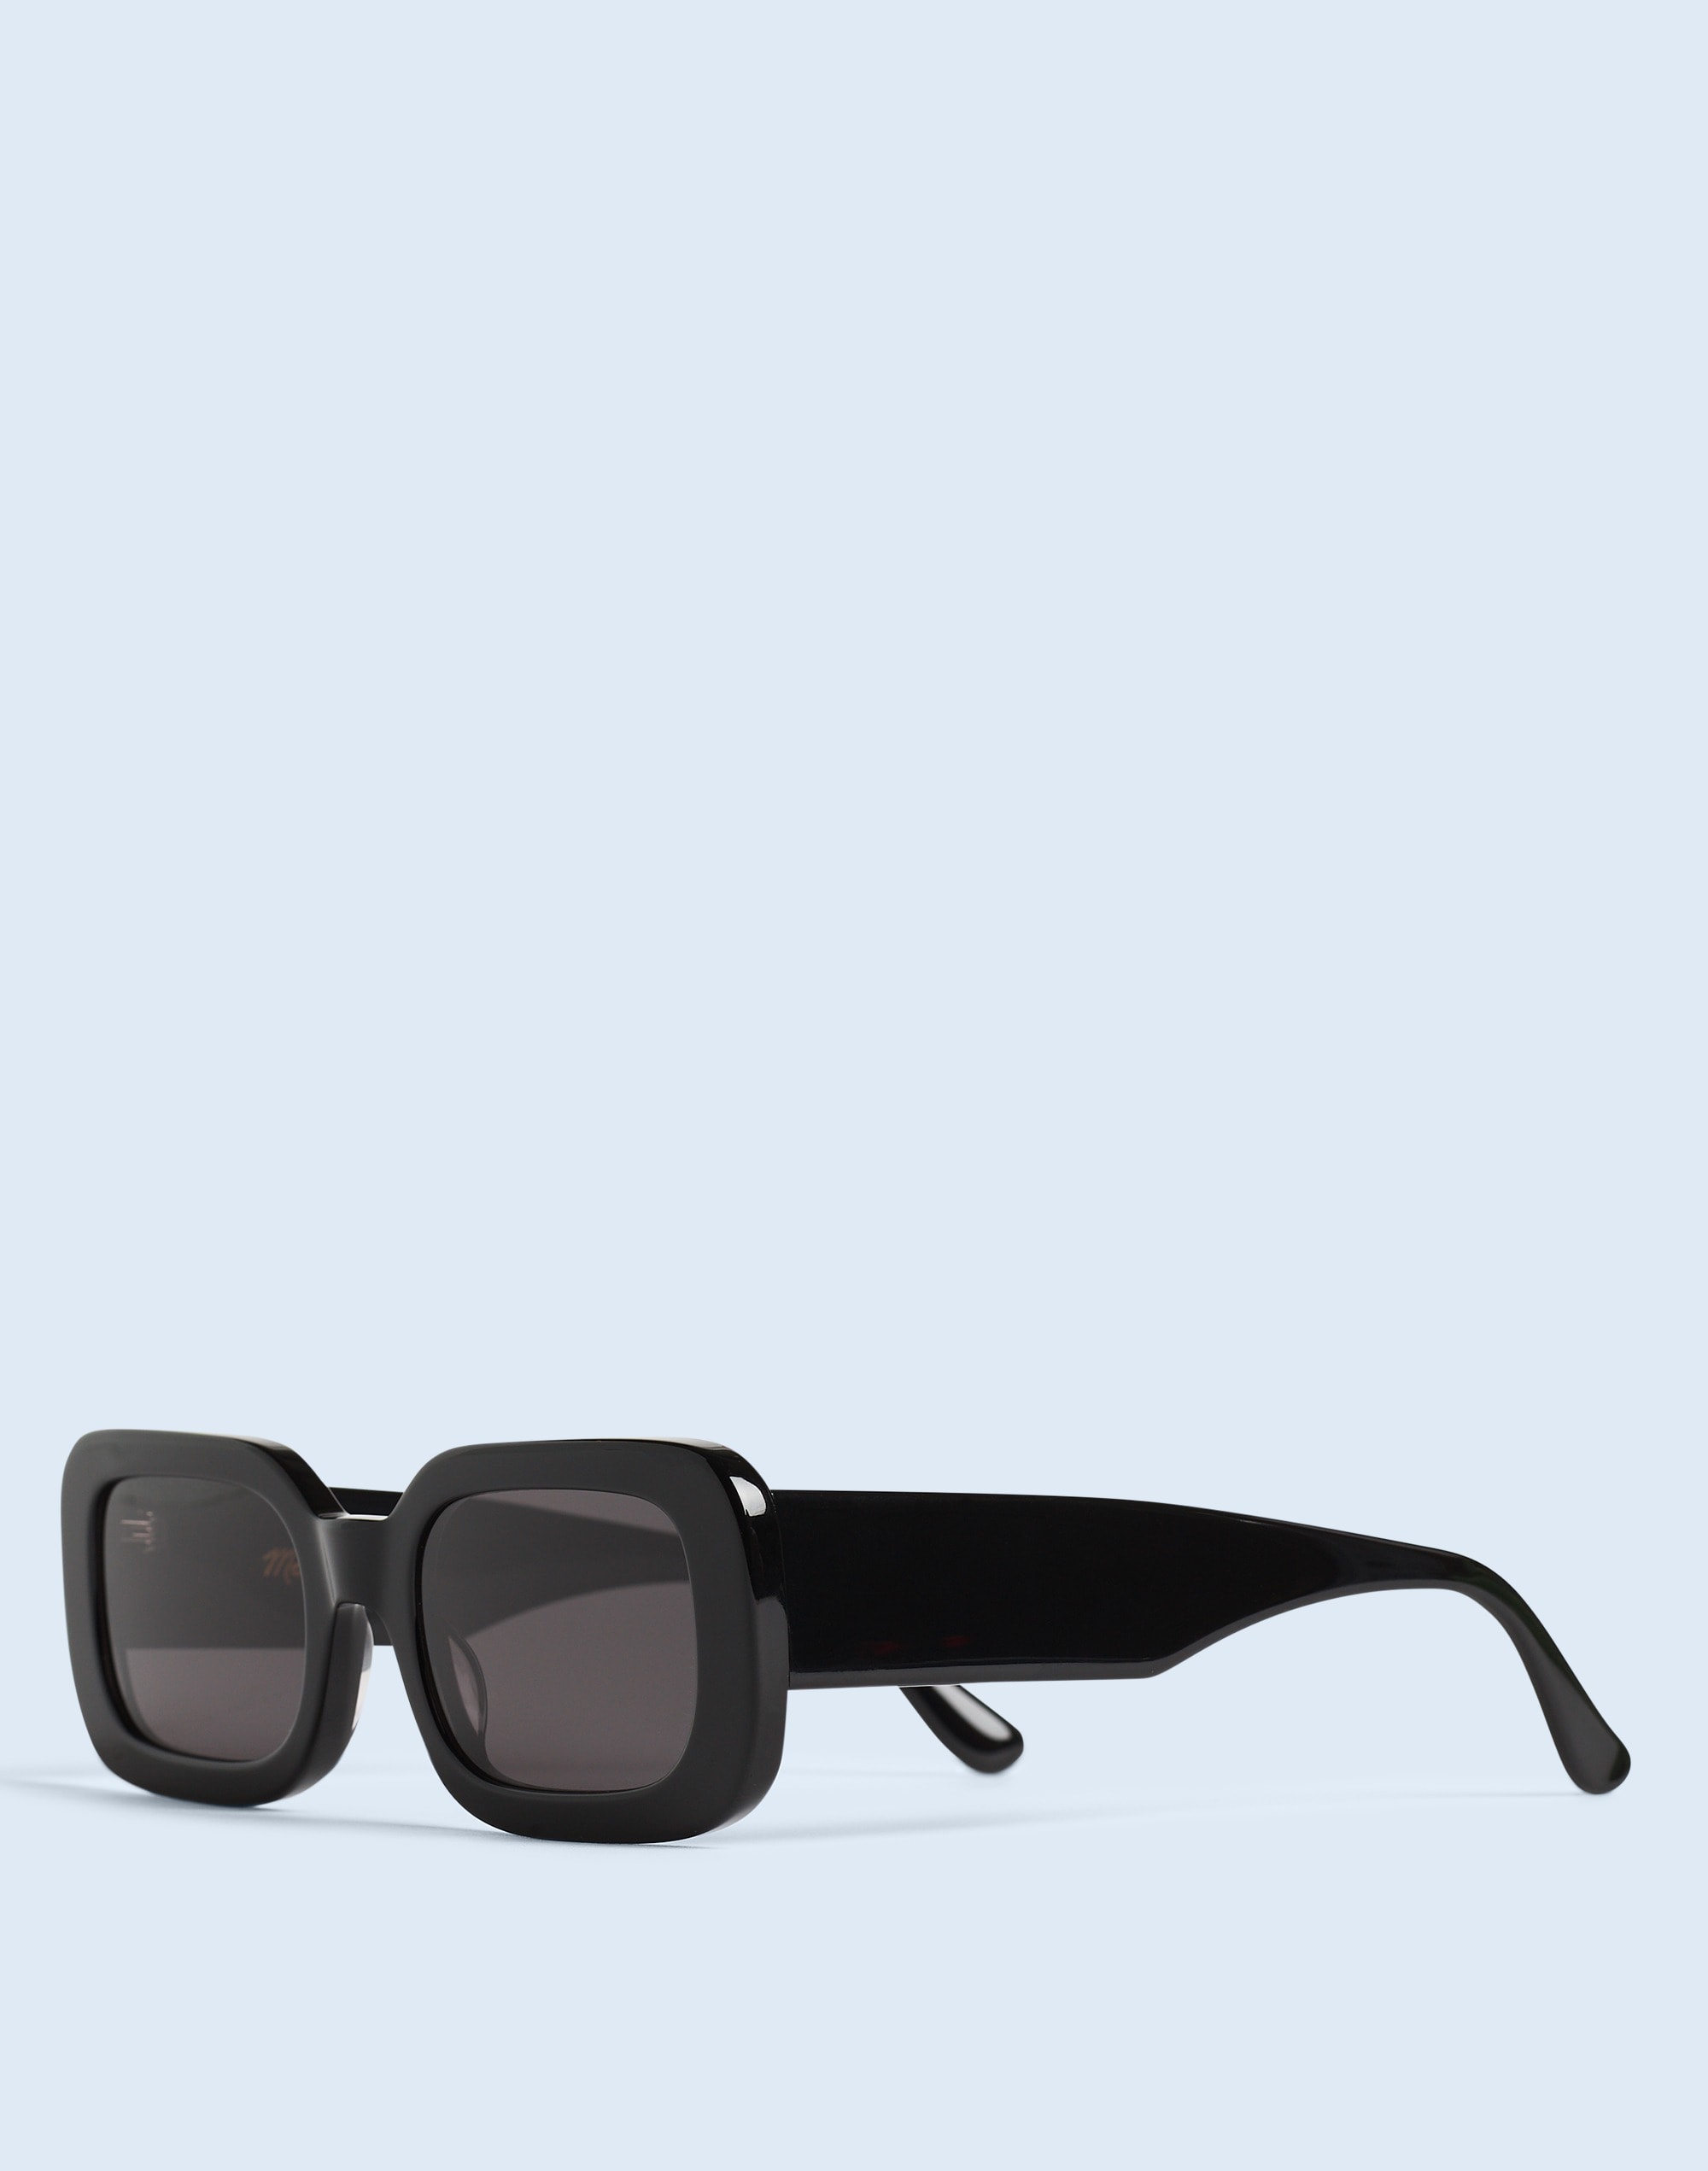 Mw Linbrook Sunglasses In True Black